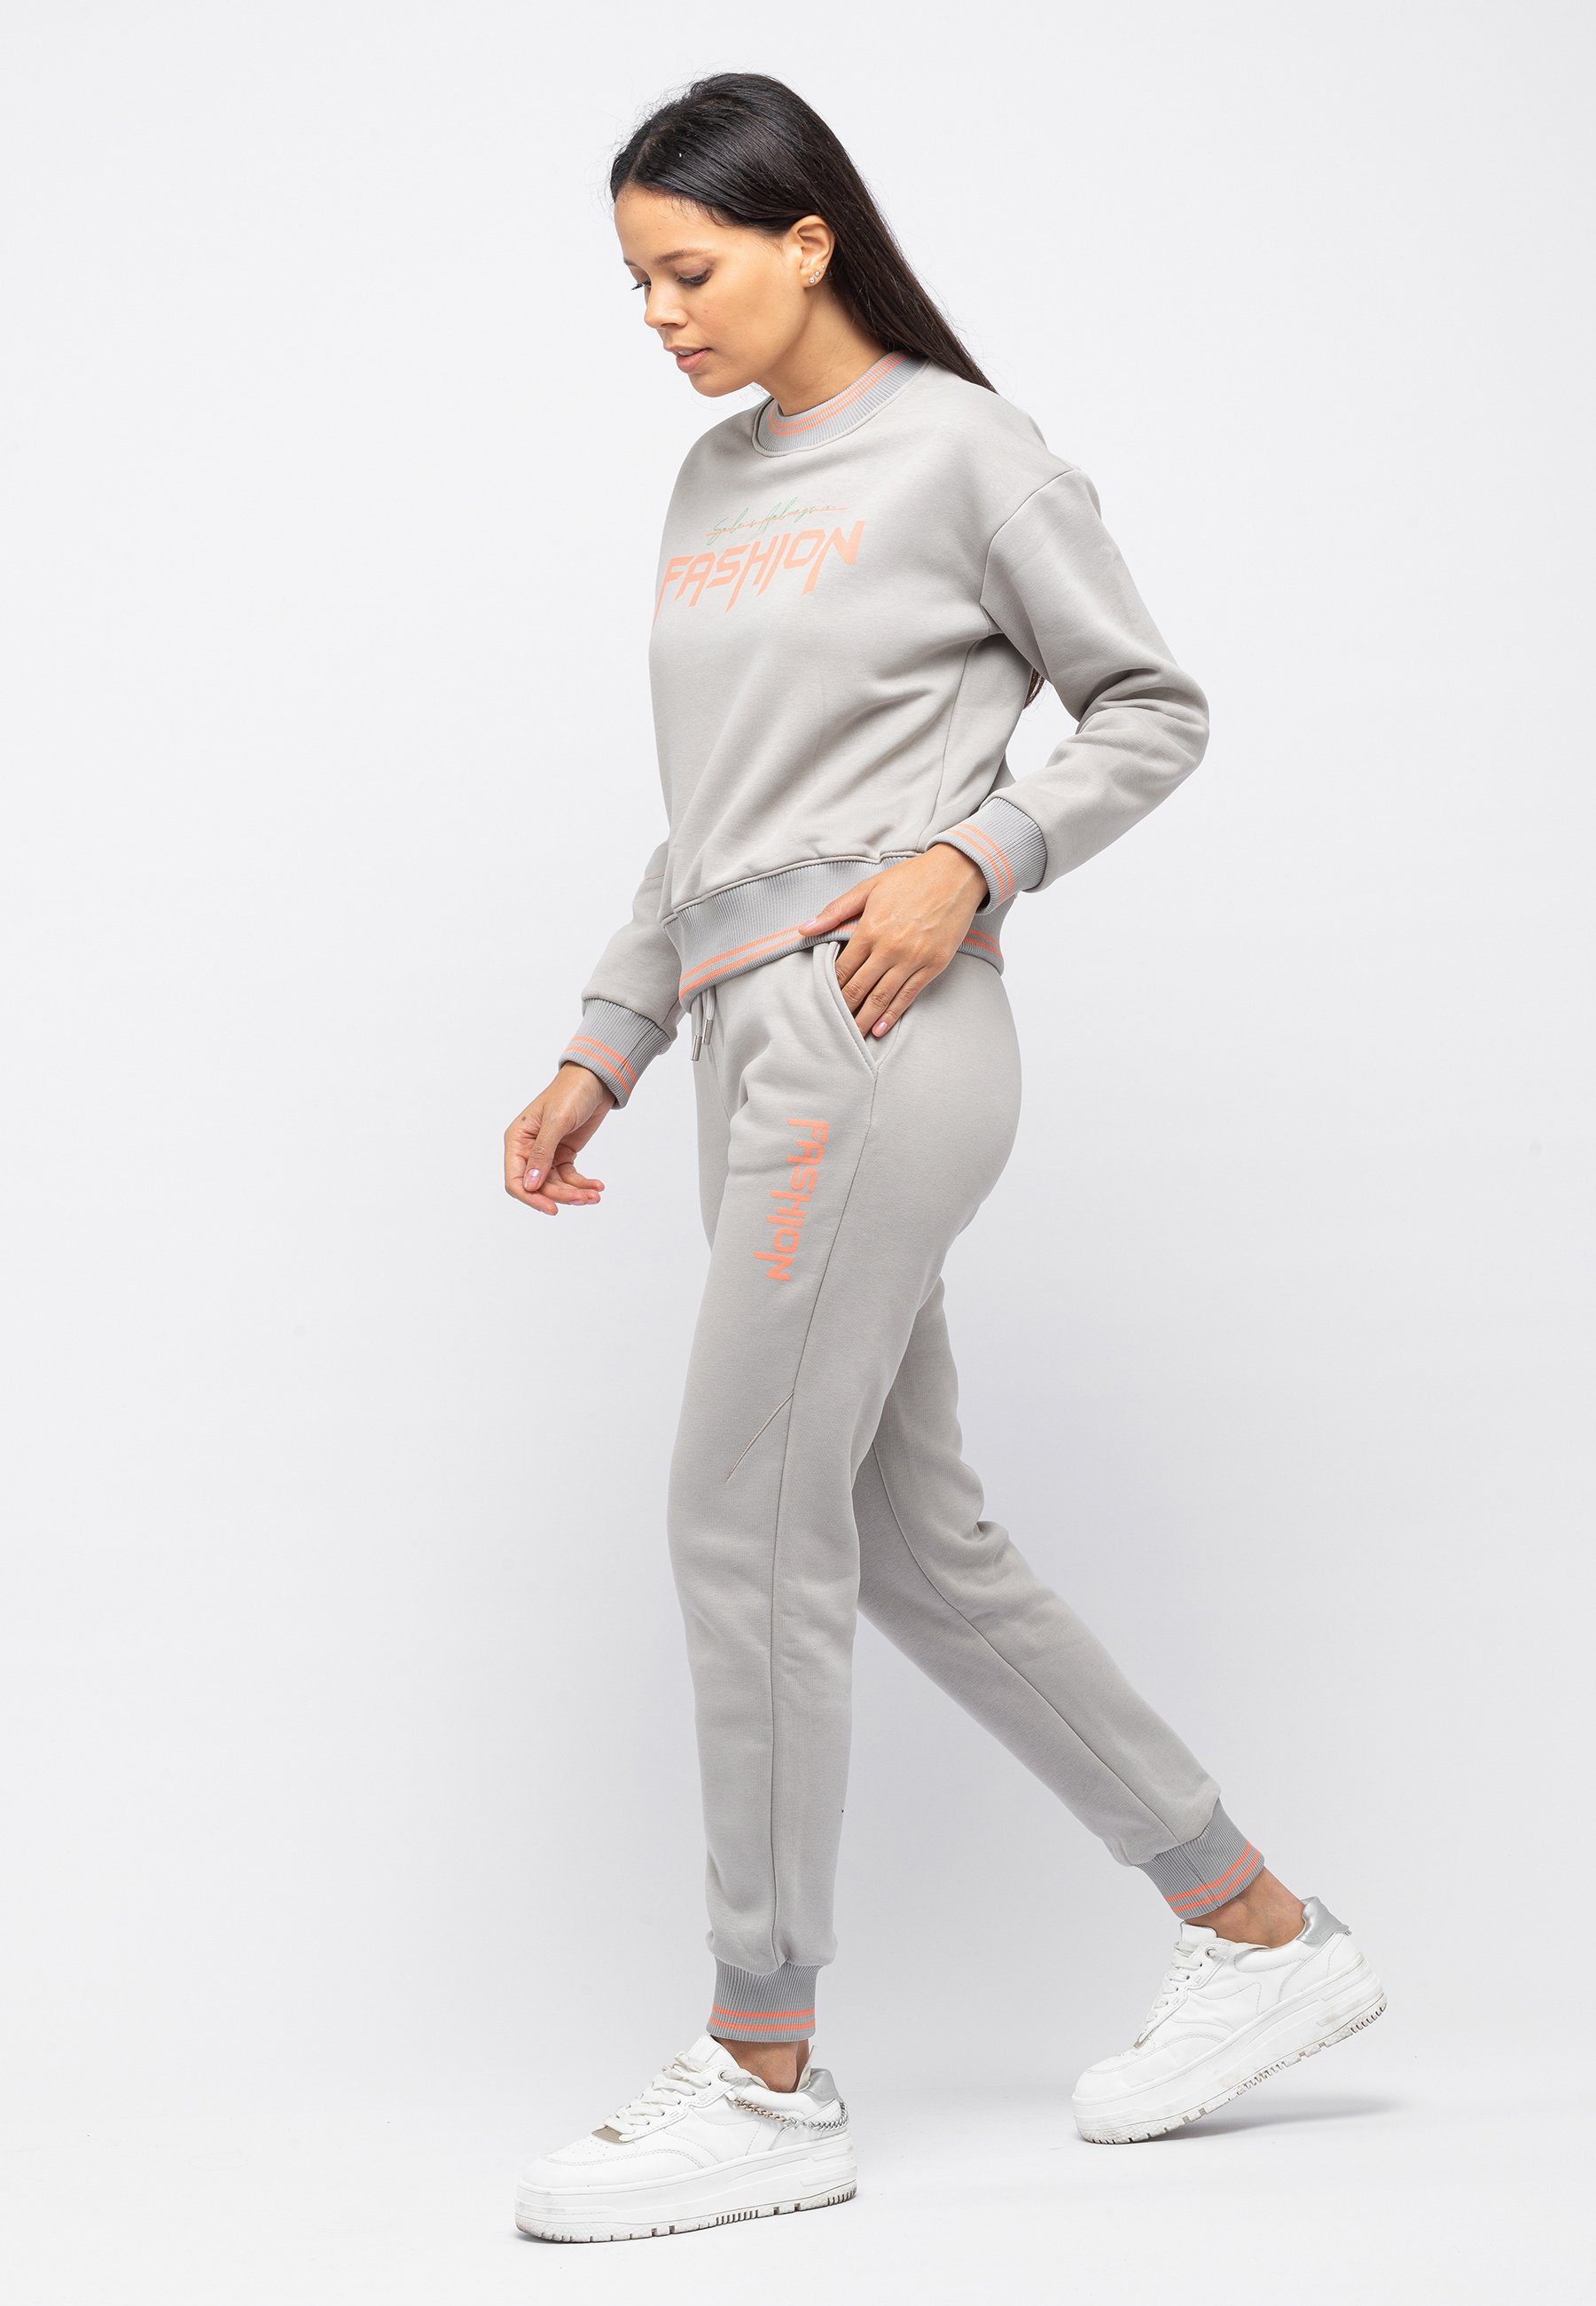 Tom Barron Trainingsanzug Lässiger, Damen-Trainingsanzug Größe grau modischer in normaler